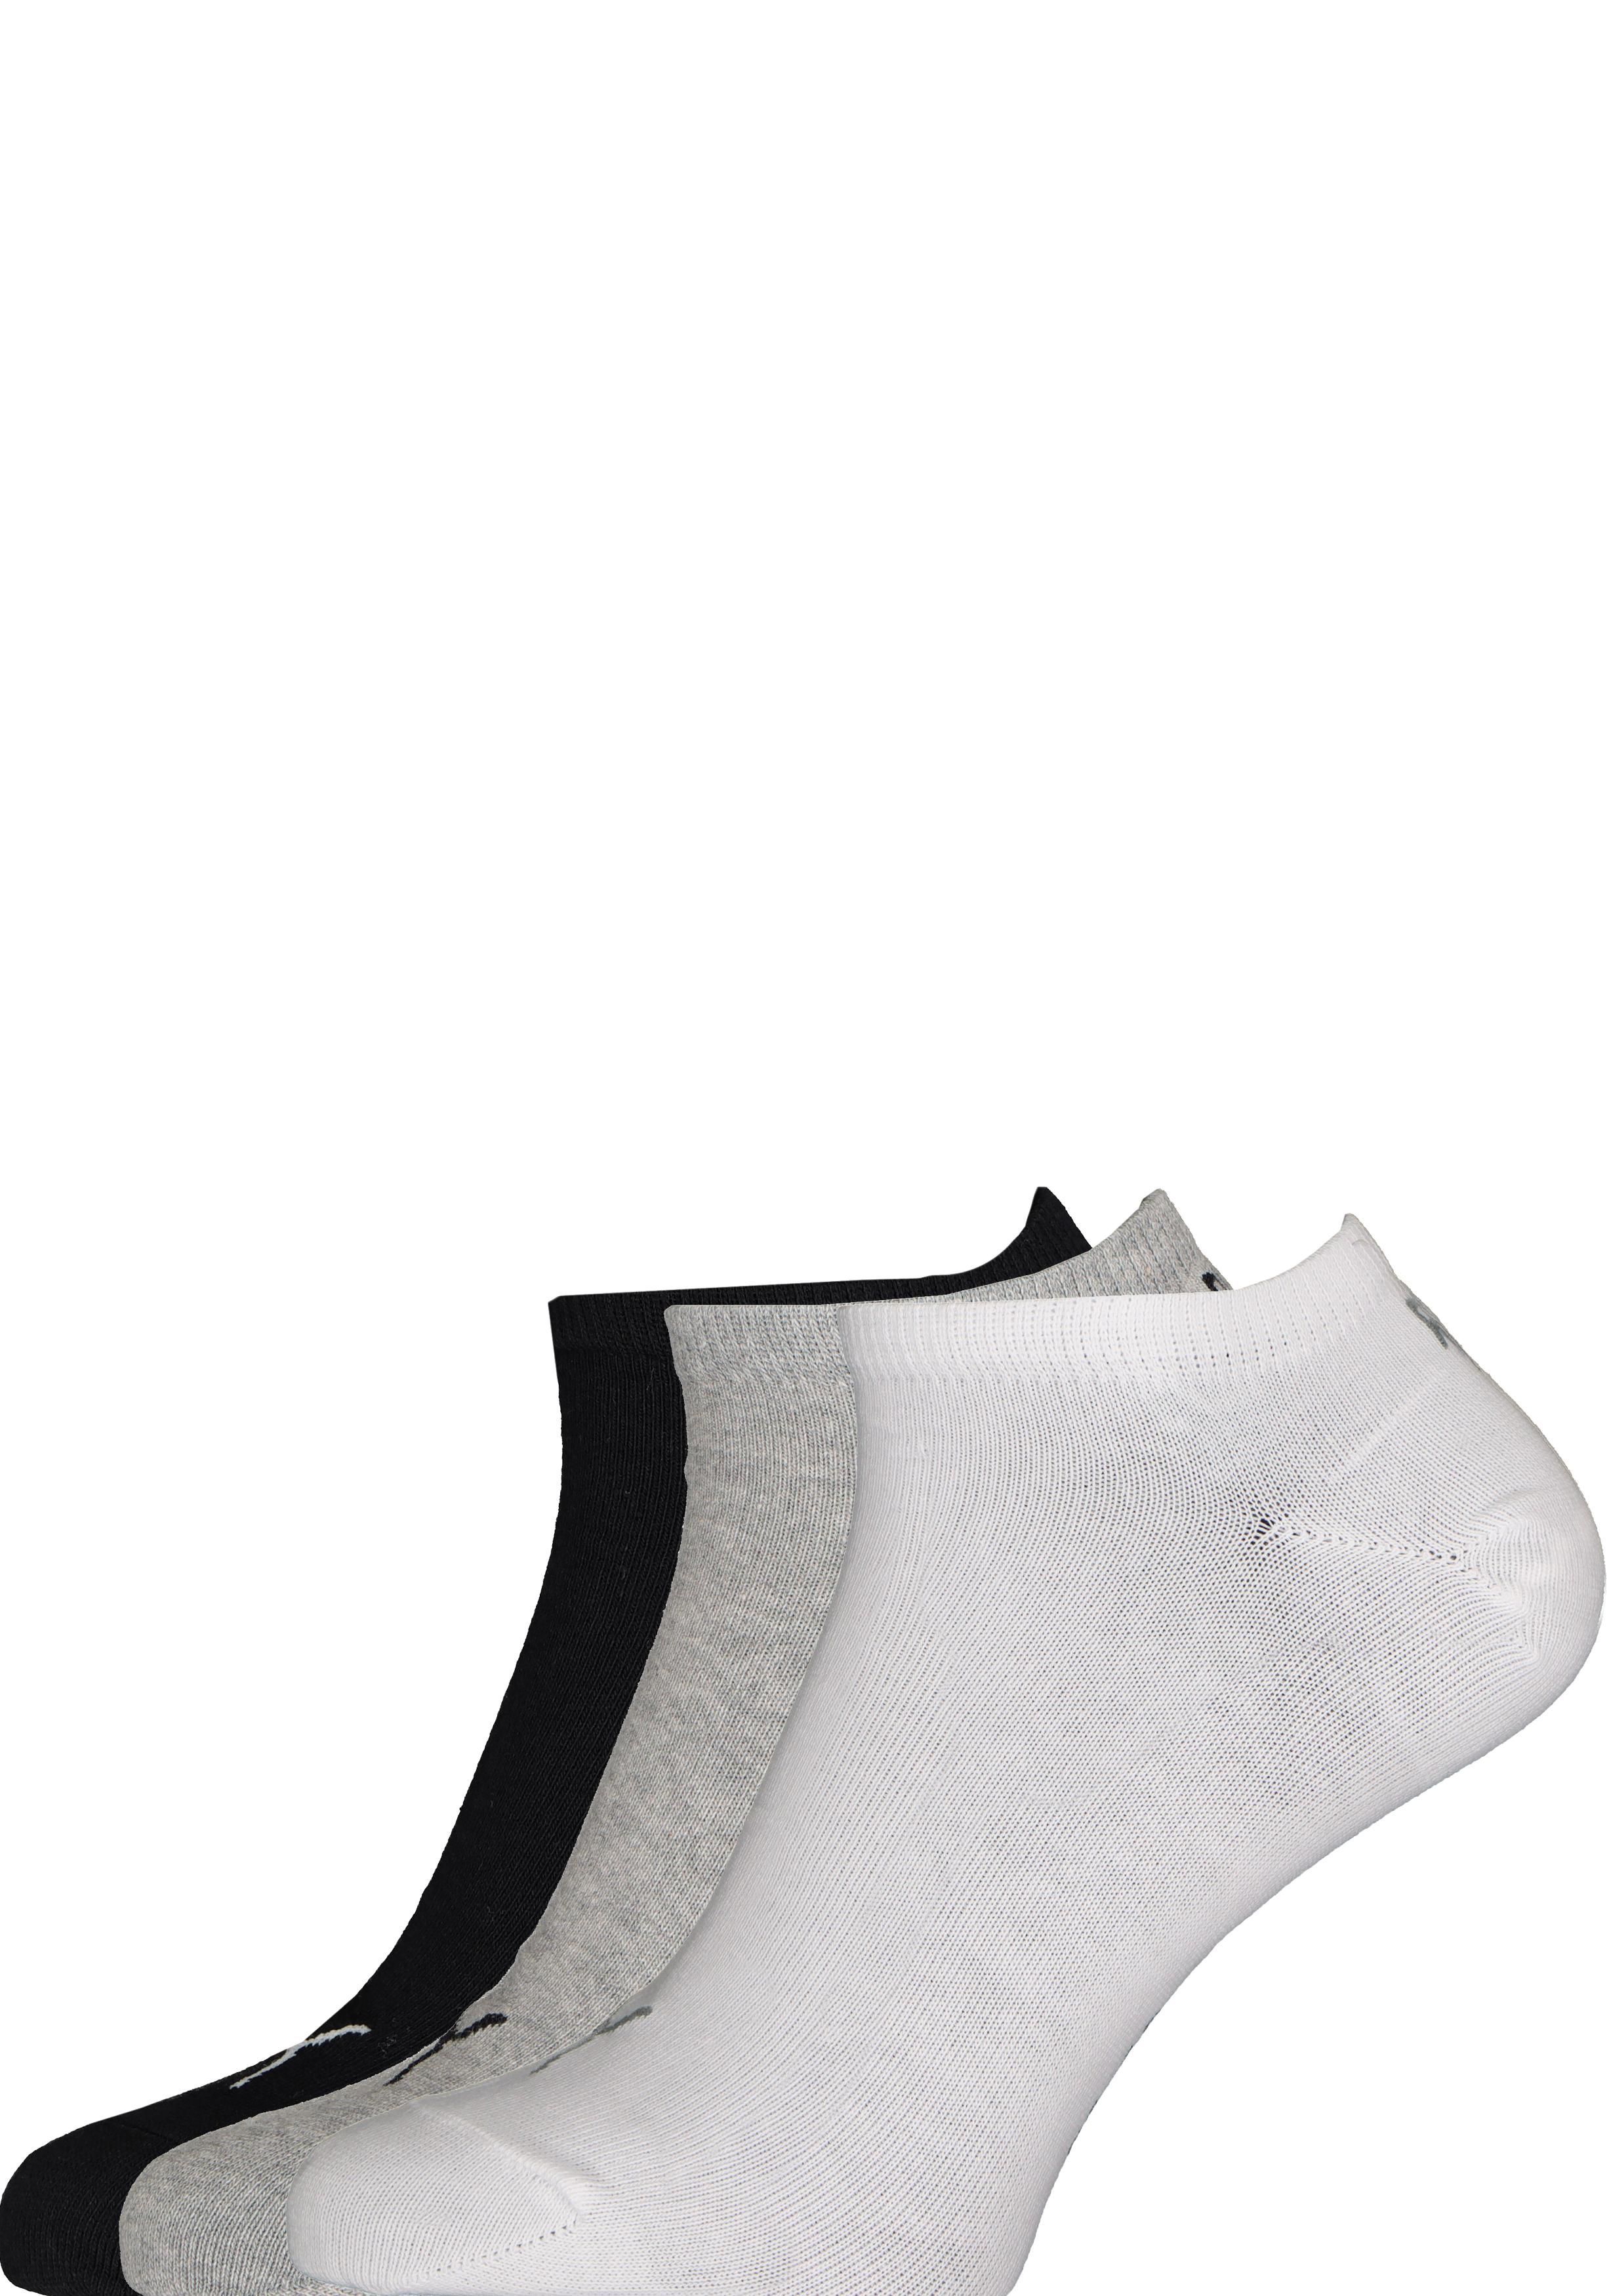 eigendom straal Veronderstelling Puma unisex sneaker sokken (6-pack), wit, grijs en zwart - 20% Paaskorting  op (bijna) alles